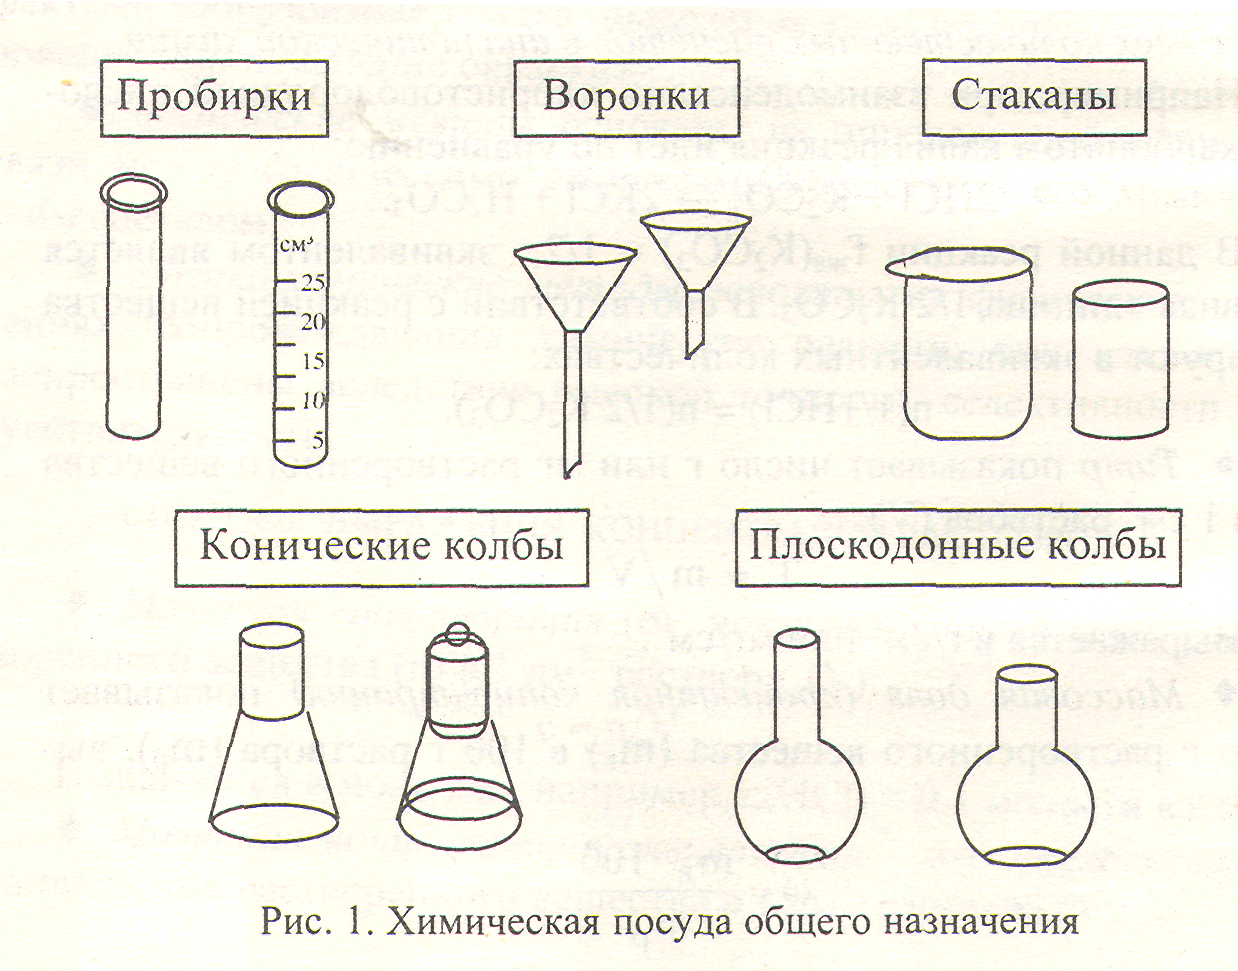 Химические предметы 8 класс. Химическая посуда схема склянки. Мерная пробирка Назначение в химии. Химическая посуда мензурки, колбы  пробирки. Химическая посуда(пробирка, химический стакан , колба) рисунок.